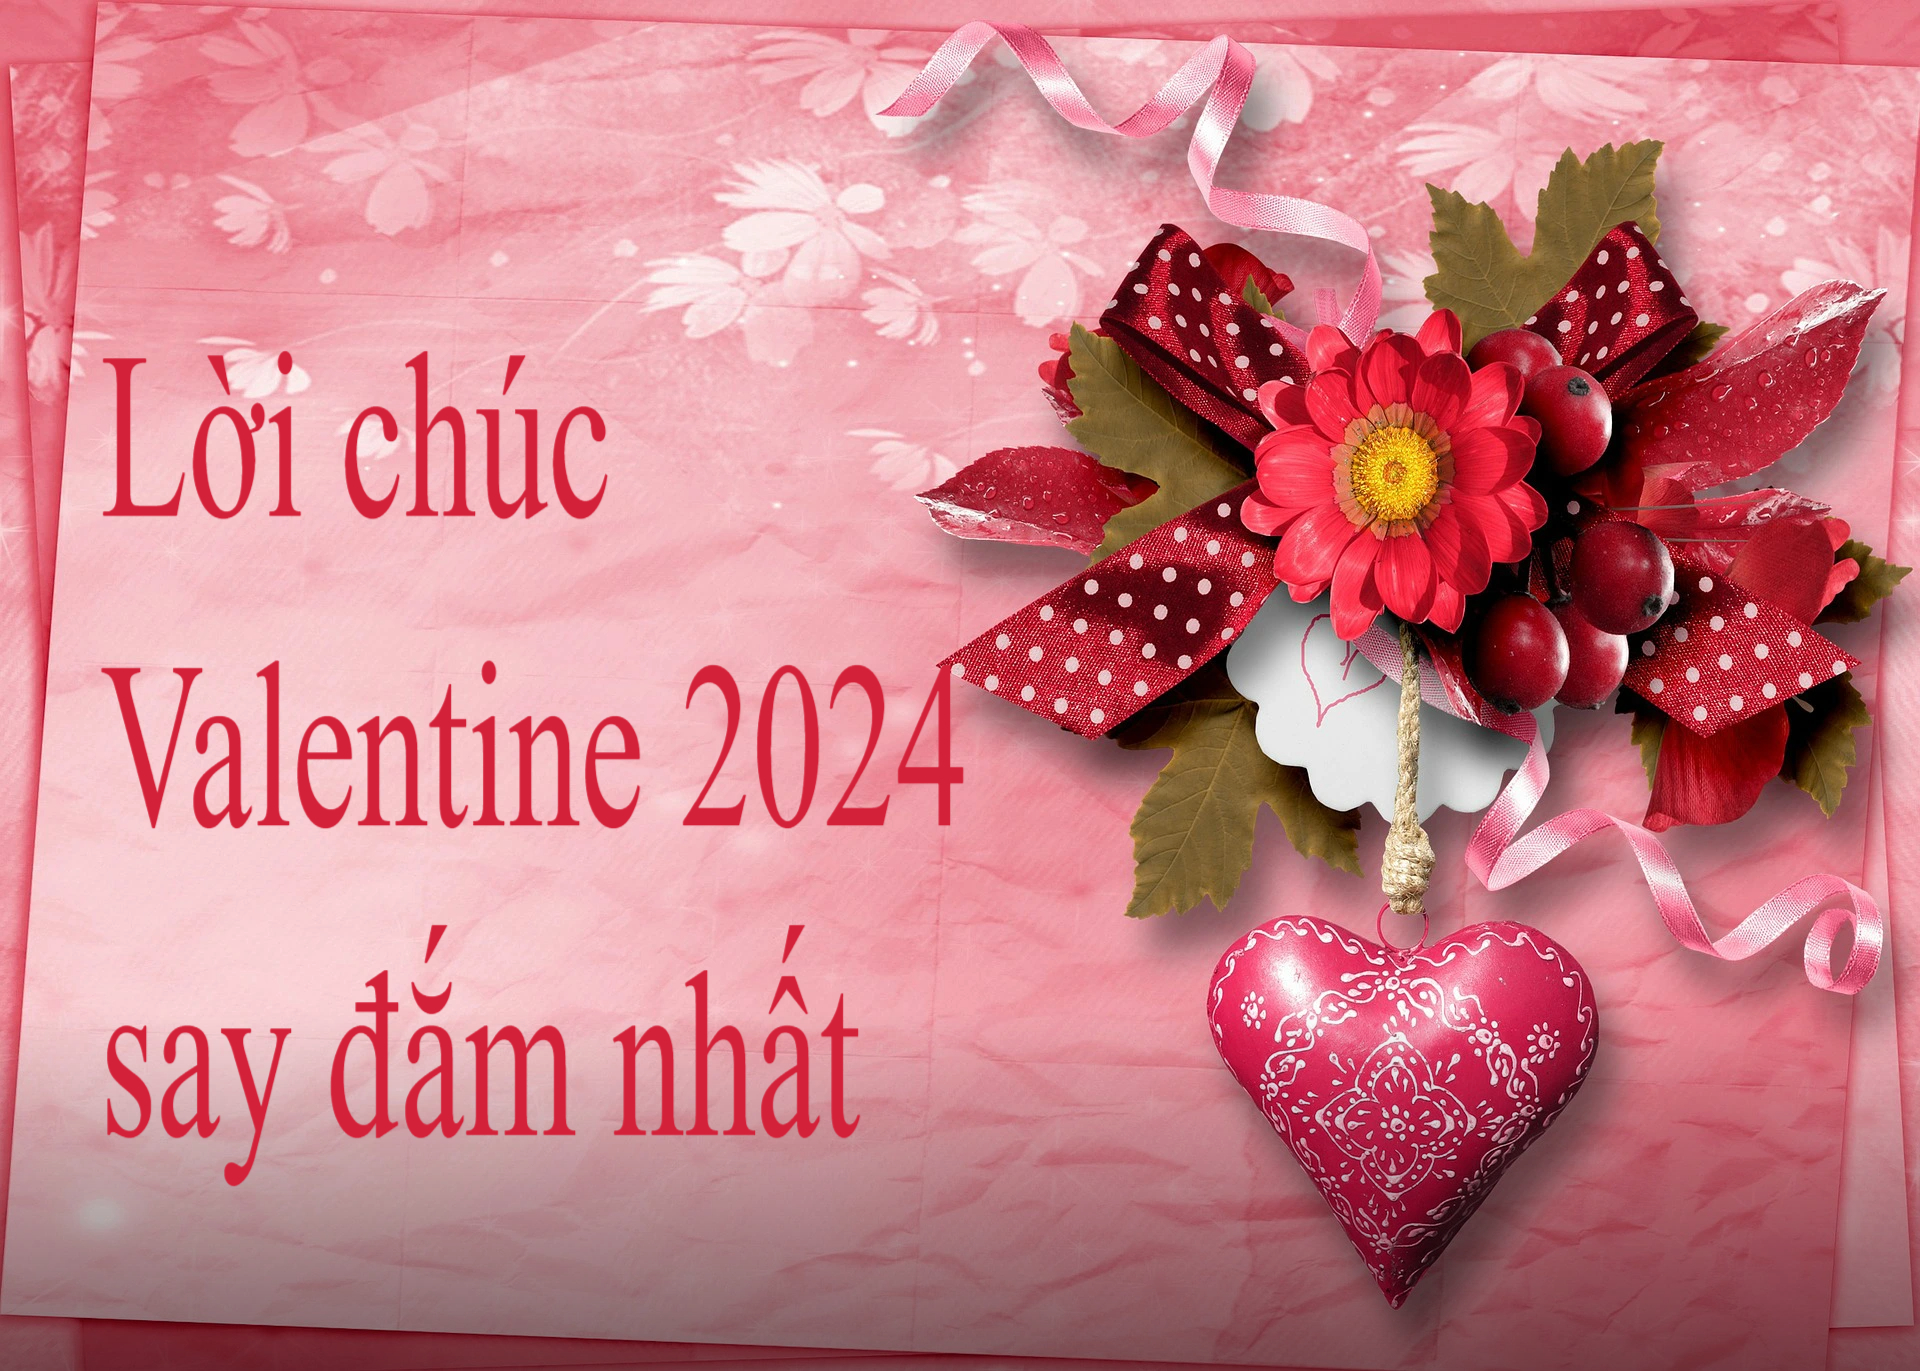 30 lời chúc Valentine 2024 lãng mạn, cảm động nhất dành cho đôi lứa - Ảnh 6.